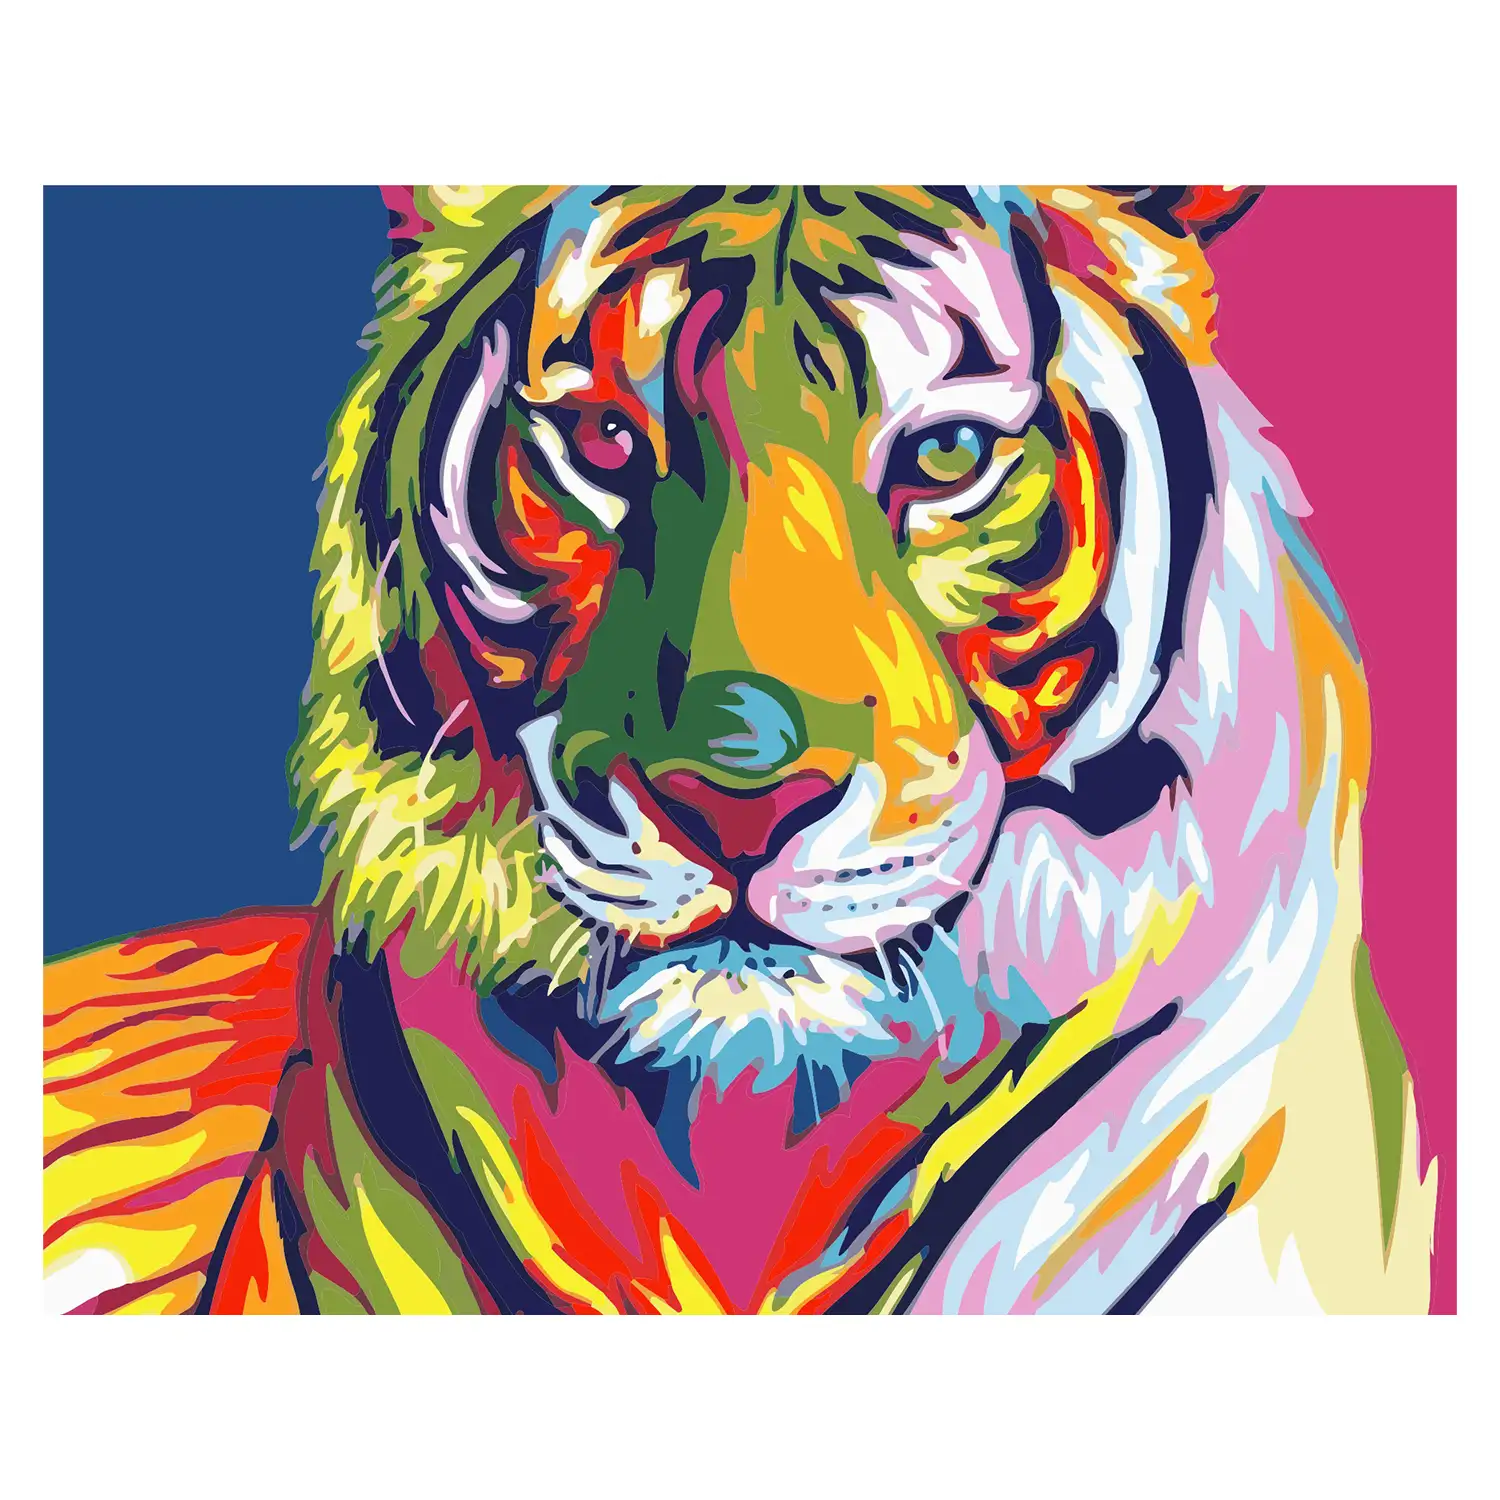 Lienzo con dibujo para pintar con números, de 40x50cm. Diseño tigre multicolor. Incluye pinceles y pinturas necesarias.